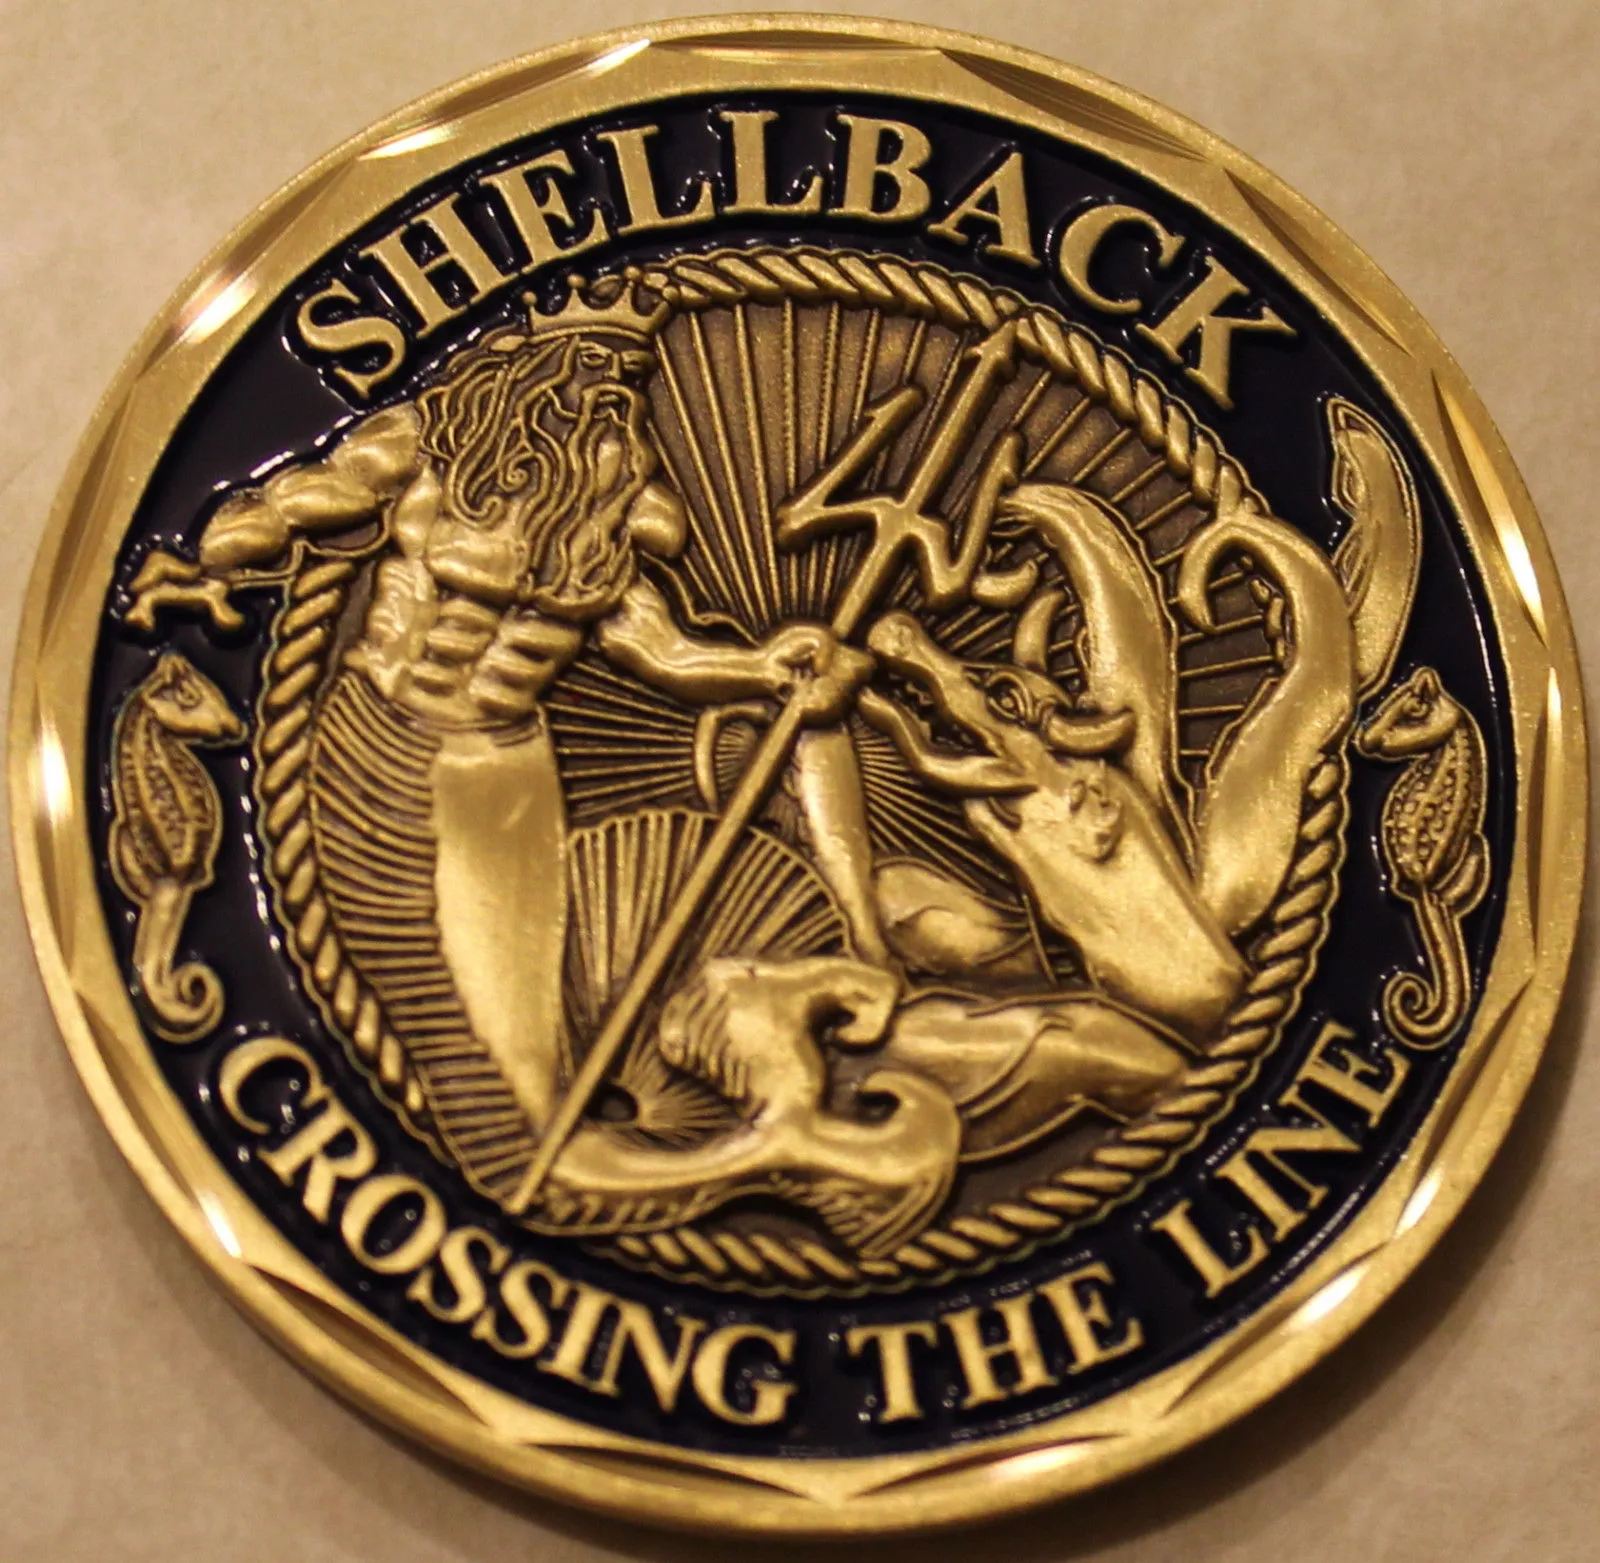 Örnek sipariş, Shellback Navy Marine Corps Challenge Coin ABD askeri meydan okuma parası Askeri hobi koleksiyonu madeni para